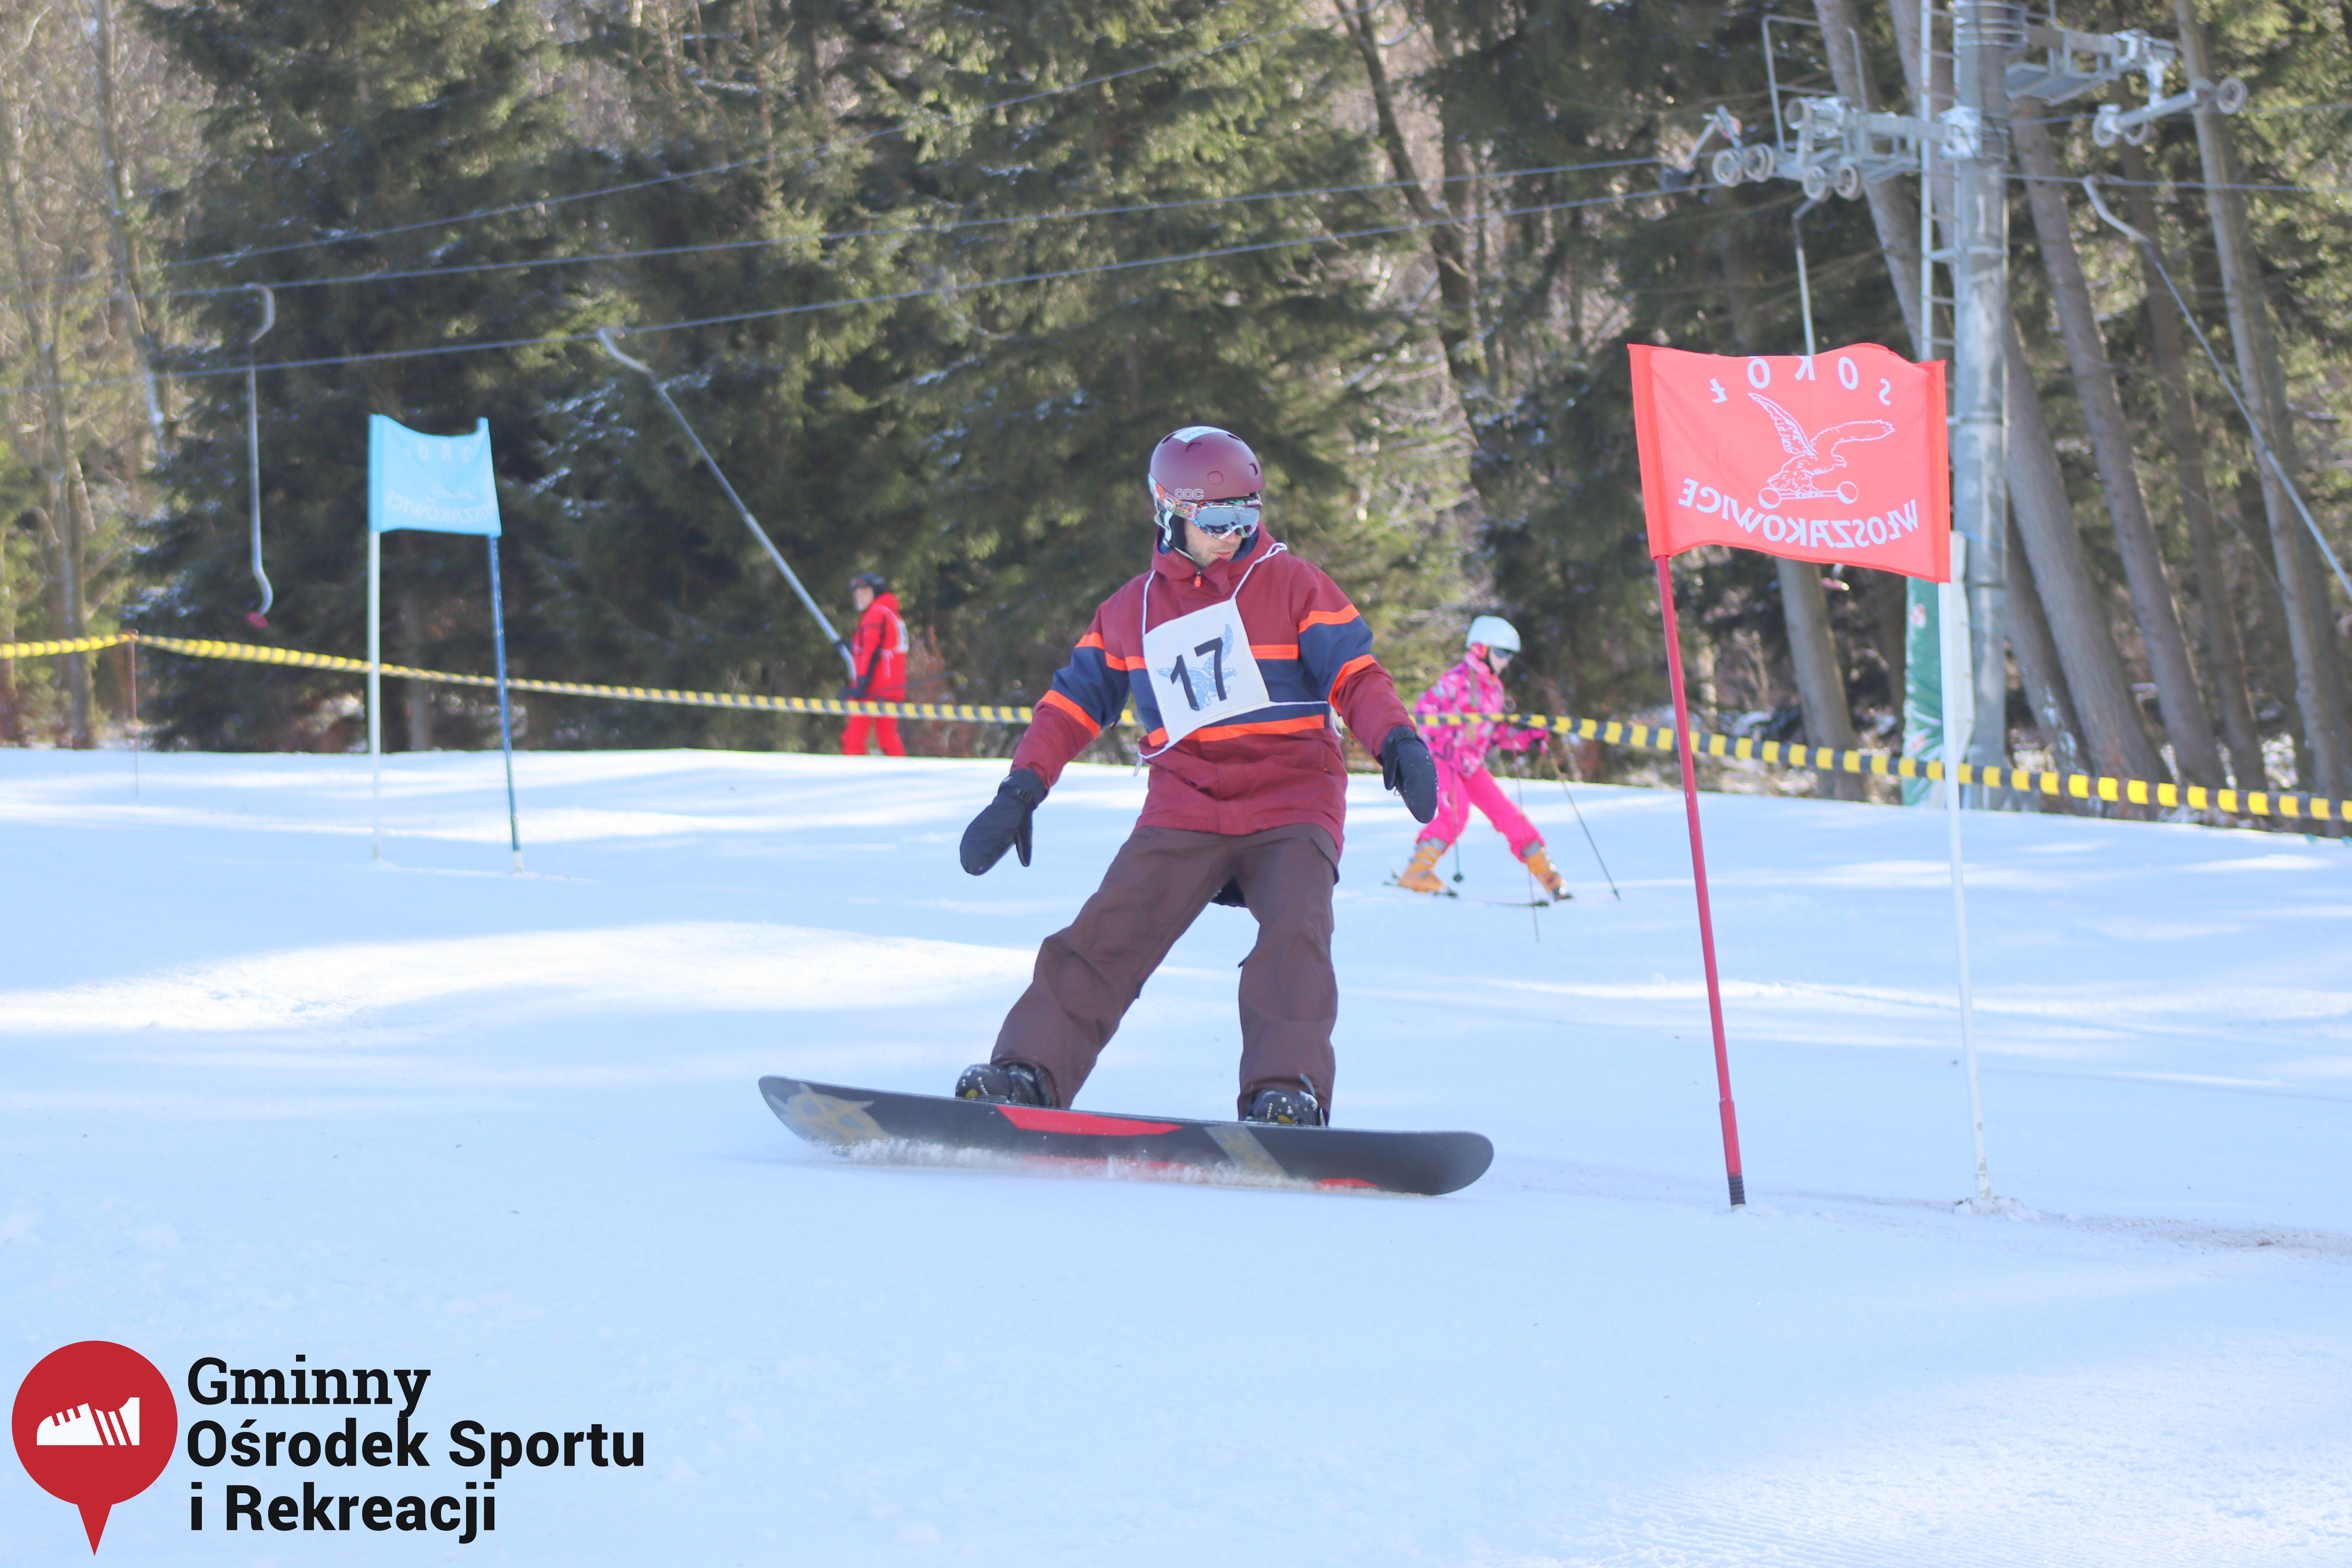 2022.02.12 - 18. Mistrzostwa Gminy Woszakowice w narciarstwie025.jpg - 1,52 MB